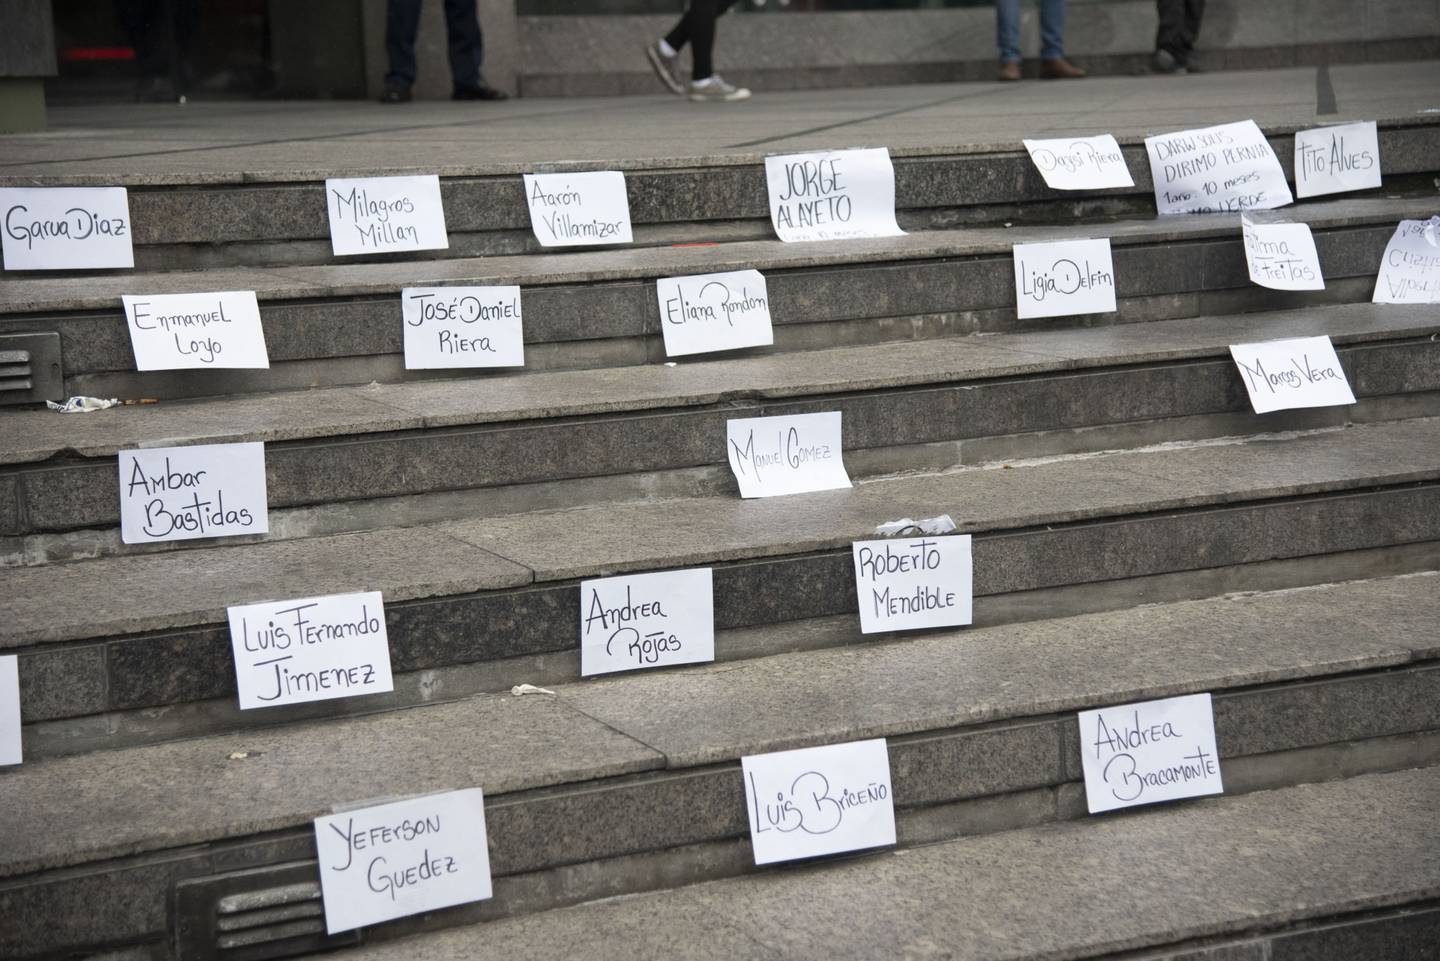 Nombres de presos políticos y víctimas de violaciones de derechos humanos se exhiben durante una protesta en Caracas, en el marco de una visita de Michelle Bachelet, Alta Comisionada de las Naciones Unidas para los Derechos Humanos, a Venezuela, el jueves 20 de junio de 2019.dfd